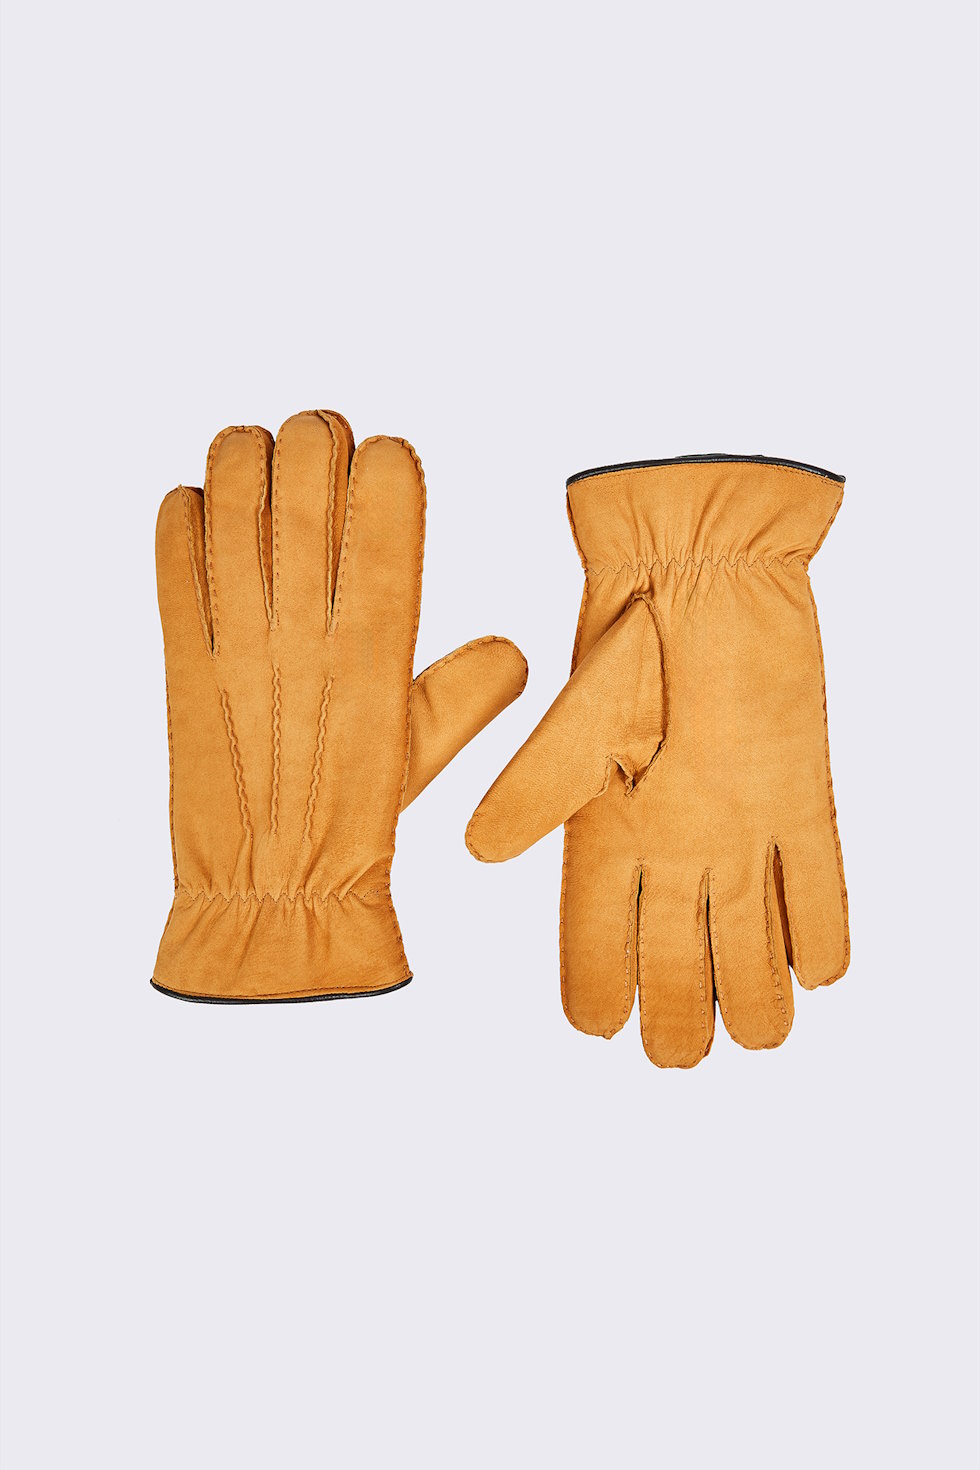 Sherling Glove